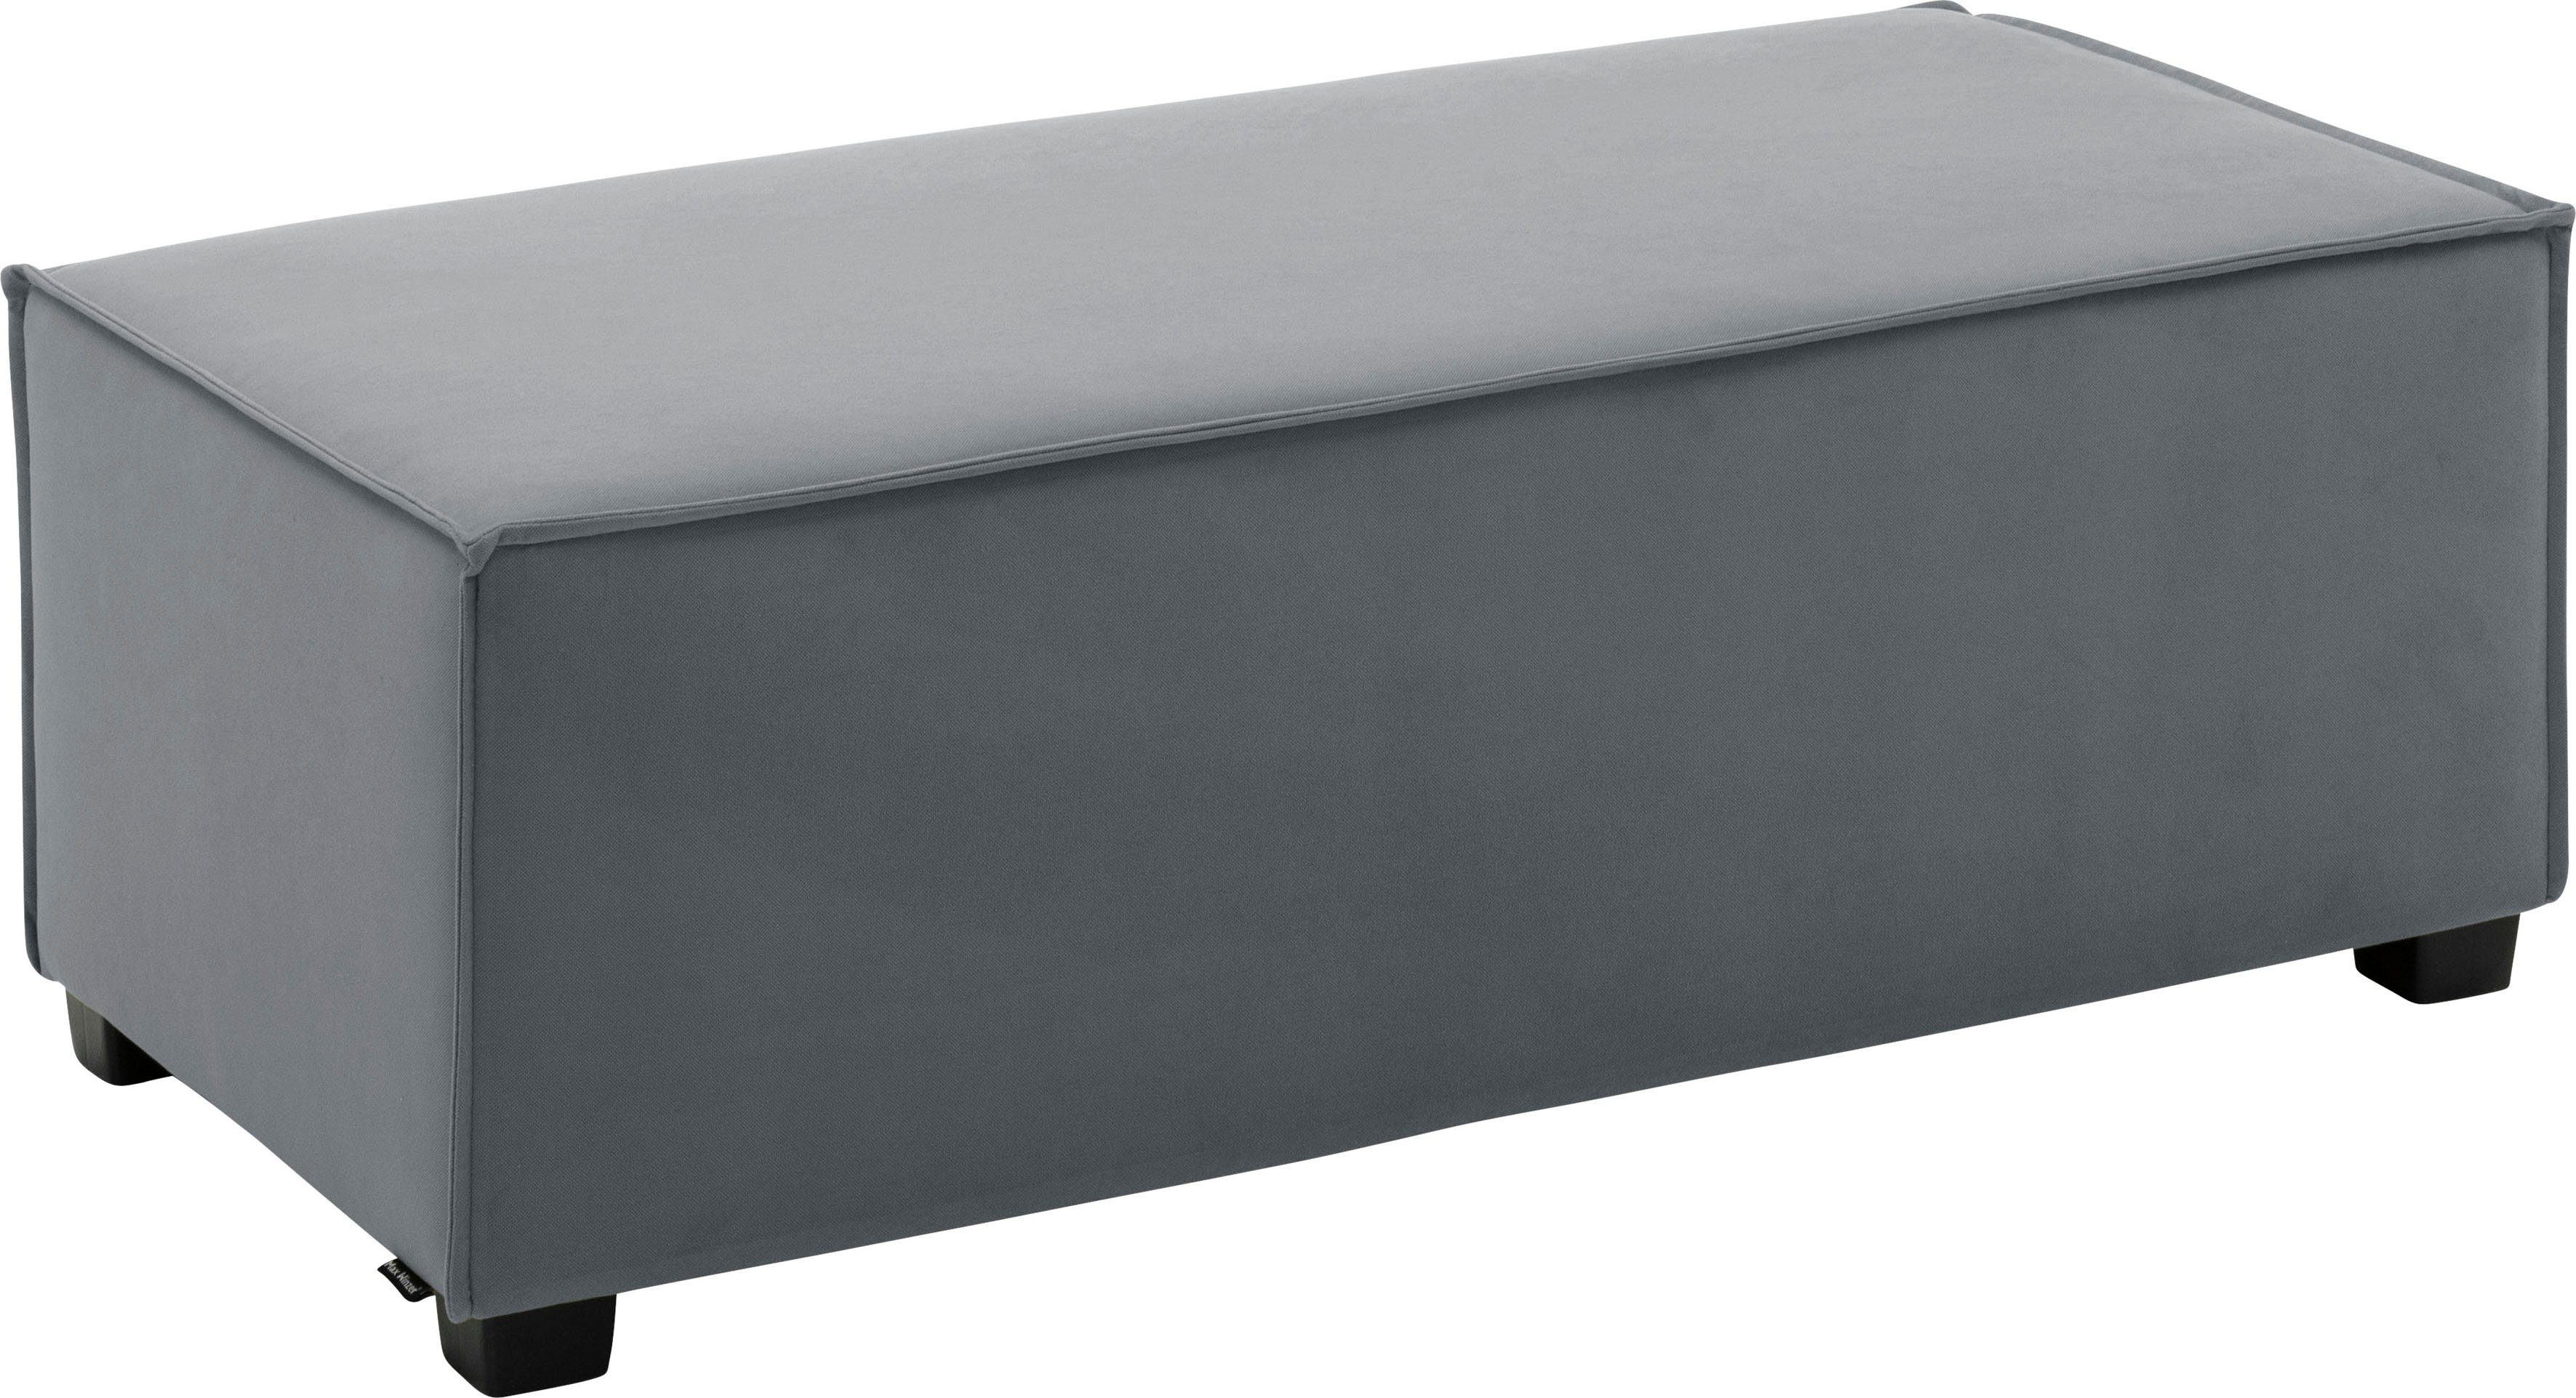 Max Winzer® Sofaelement MOVE, Einzelelement 120/60/42 cm, individuell kombinierbar grau